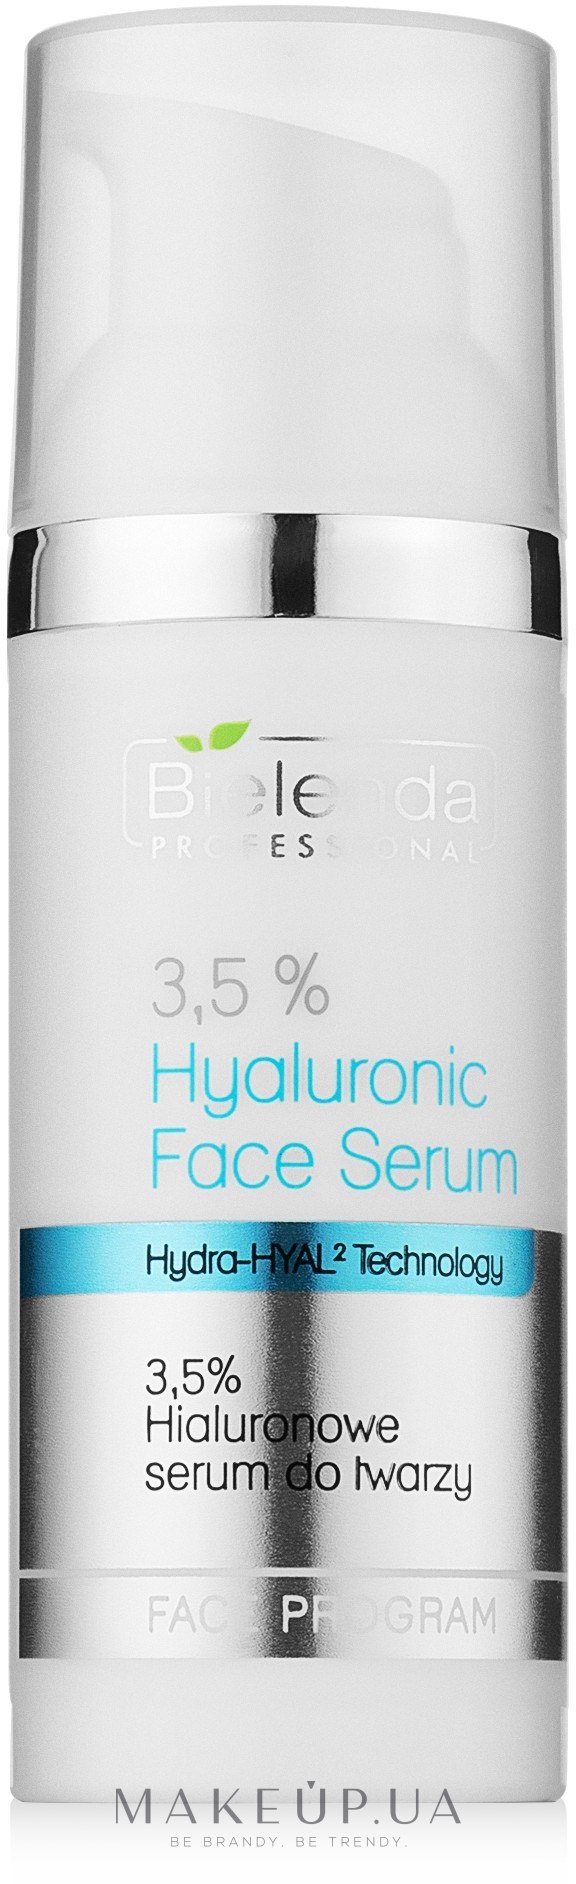 Гиалуроновая сыворотка для лица 3,5% - Bielenda Professional Face Program 3.5% Hyaluronic Face Serum — фото 50g